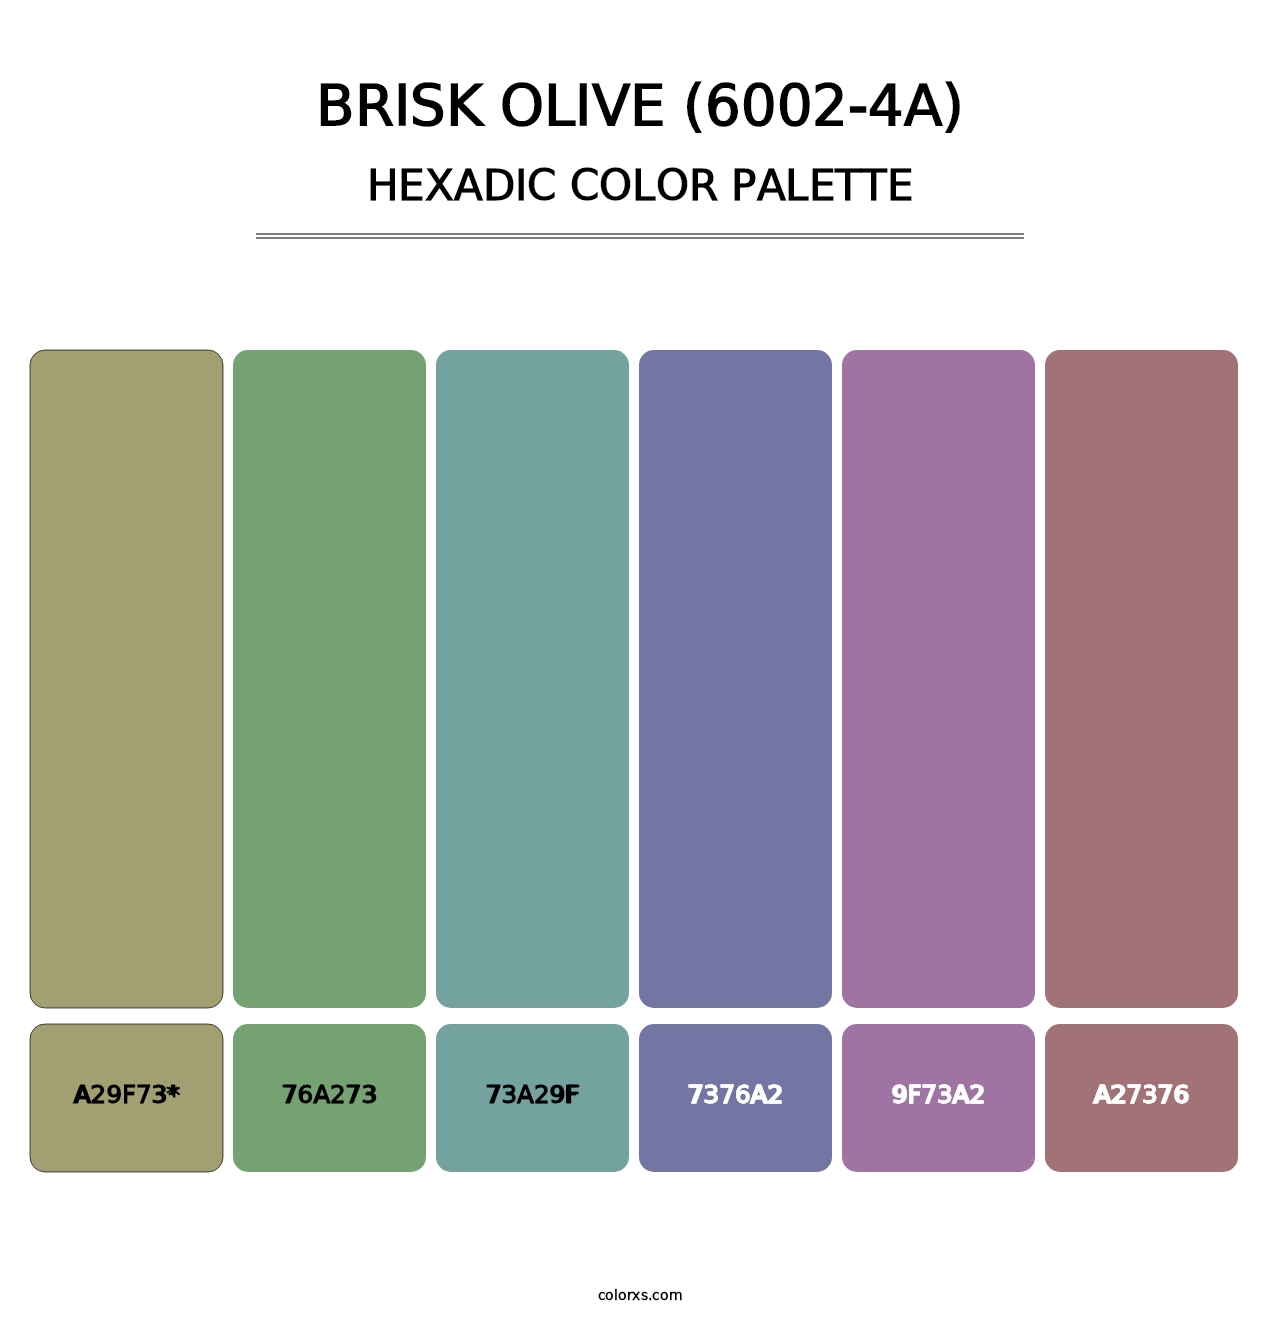 Brisk Olive (6002-4A) - Hexadic Color Palette